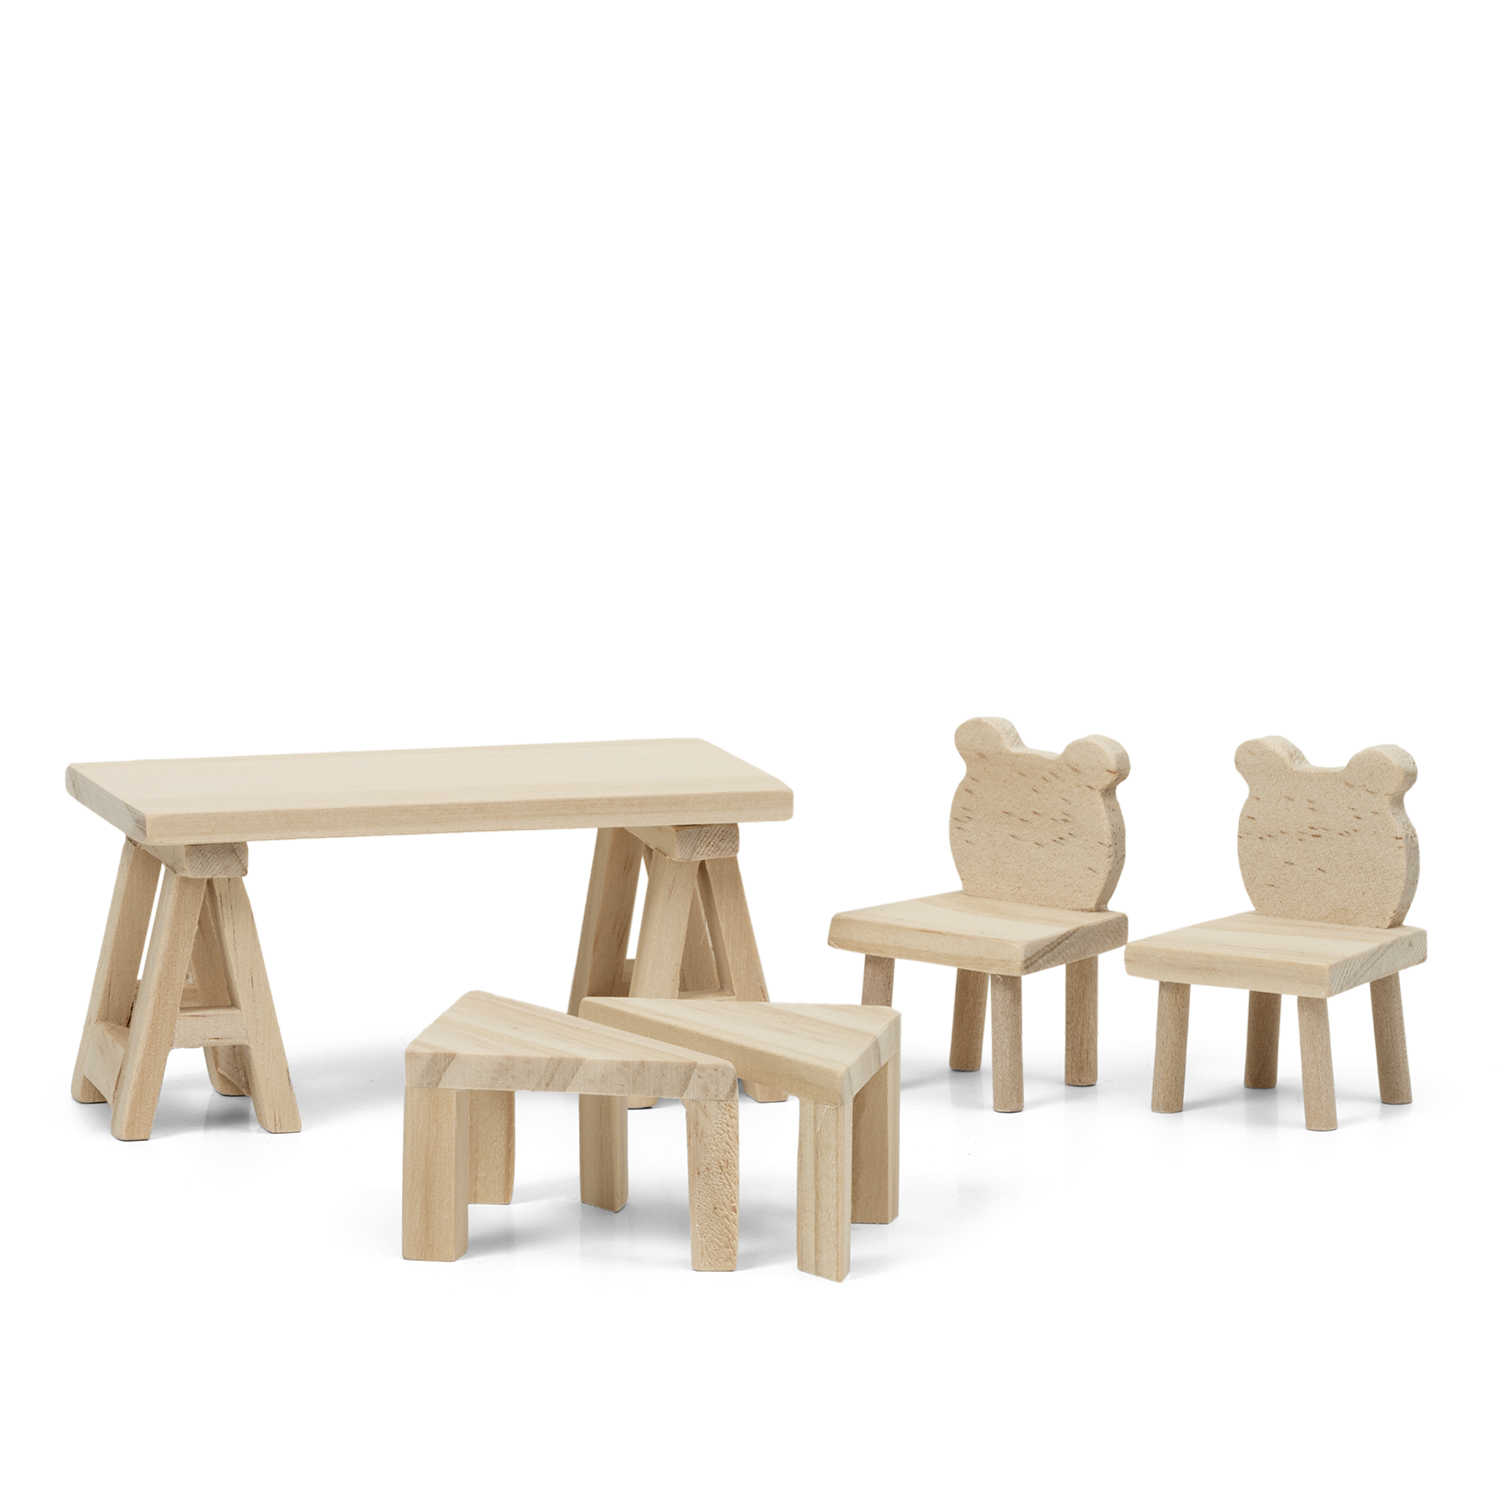 Outlet lundby dukkehusmøbler bord & stole træ